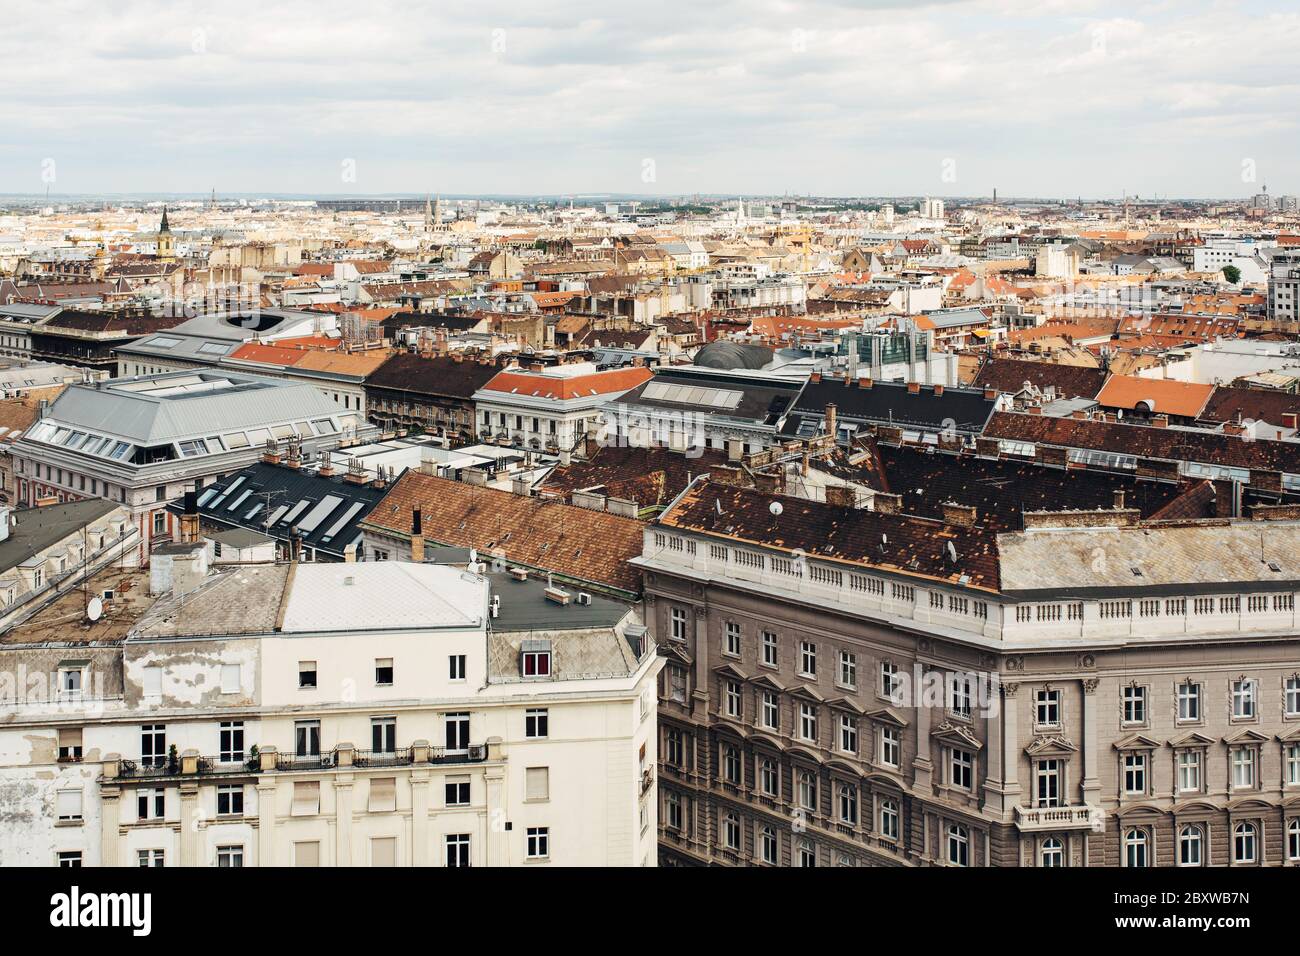 Luftaufnahme der Budapester Stadt mit verschiedenen Architekturstilen. Budapest ist die Hauptstadt von Ungarn. Stockfoto